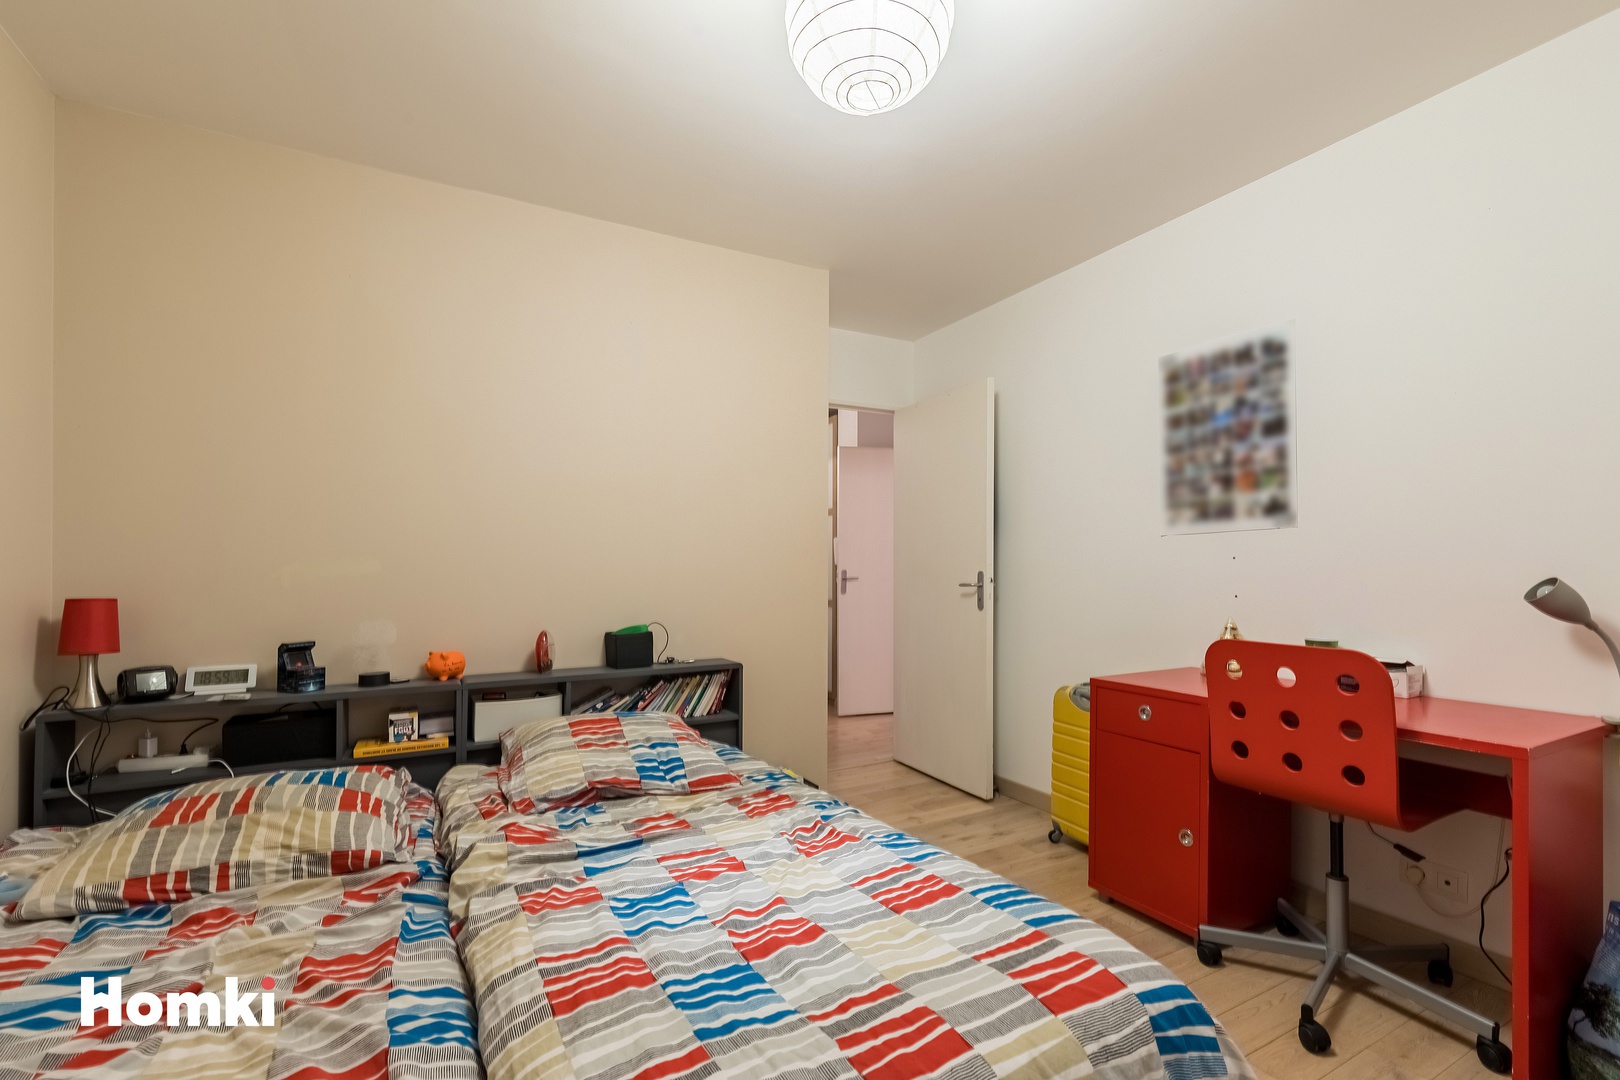 Homki - Vente Appartement  de 63.0 m² à Montfort-sur-Meu 35160